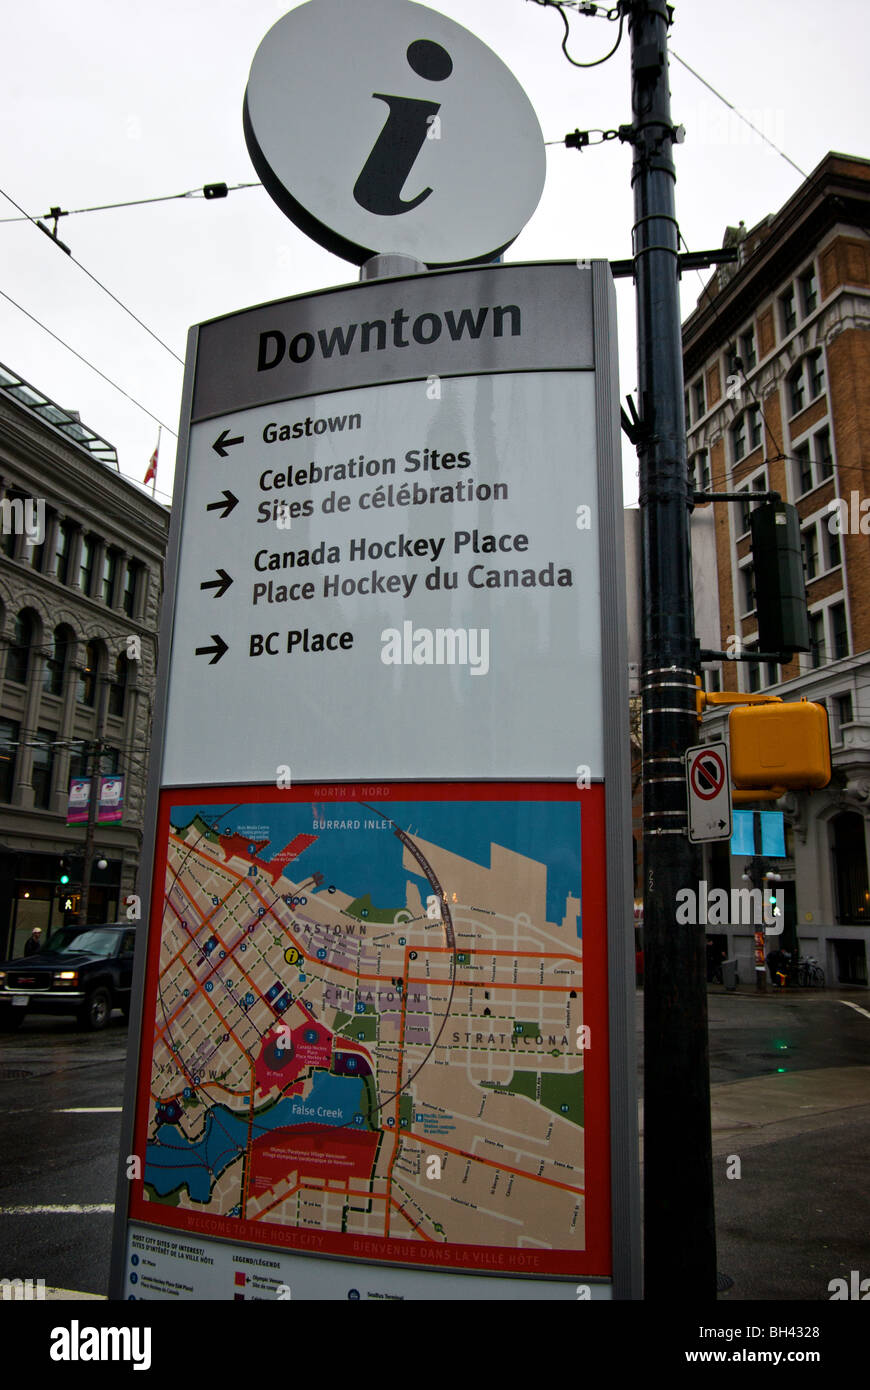 Kiosque d'information bilingue avec la carte d'orientation sites des Jeux Olympiques d'hiver 2010 Le centre-ville de Vancouver Hastings coin rues Cambie Banque D'Images